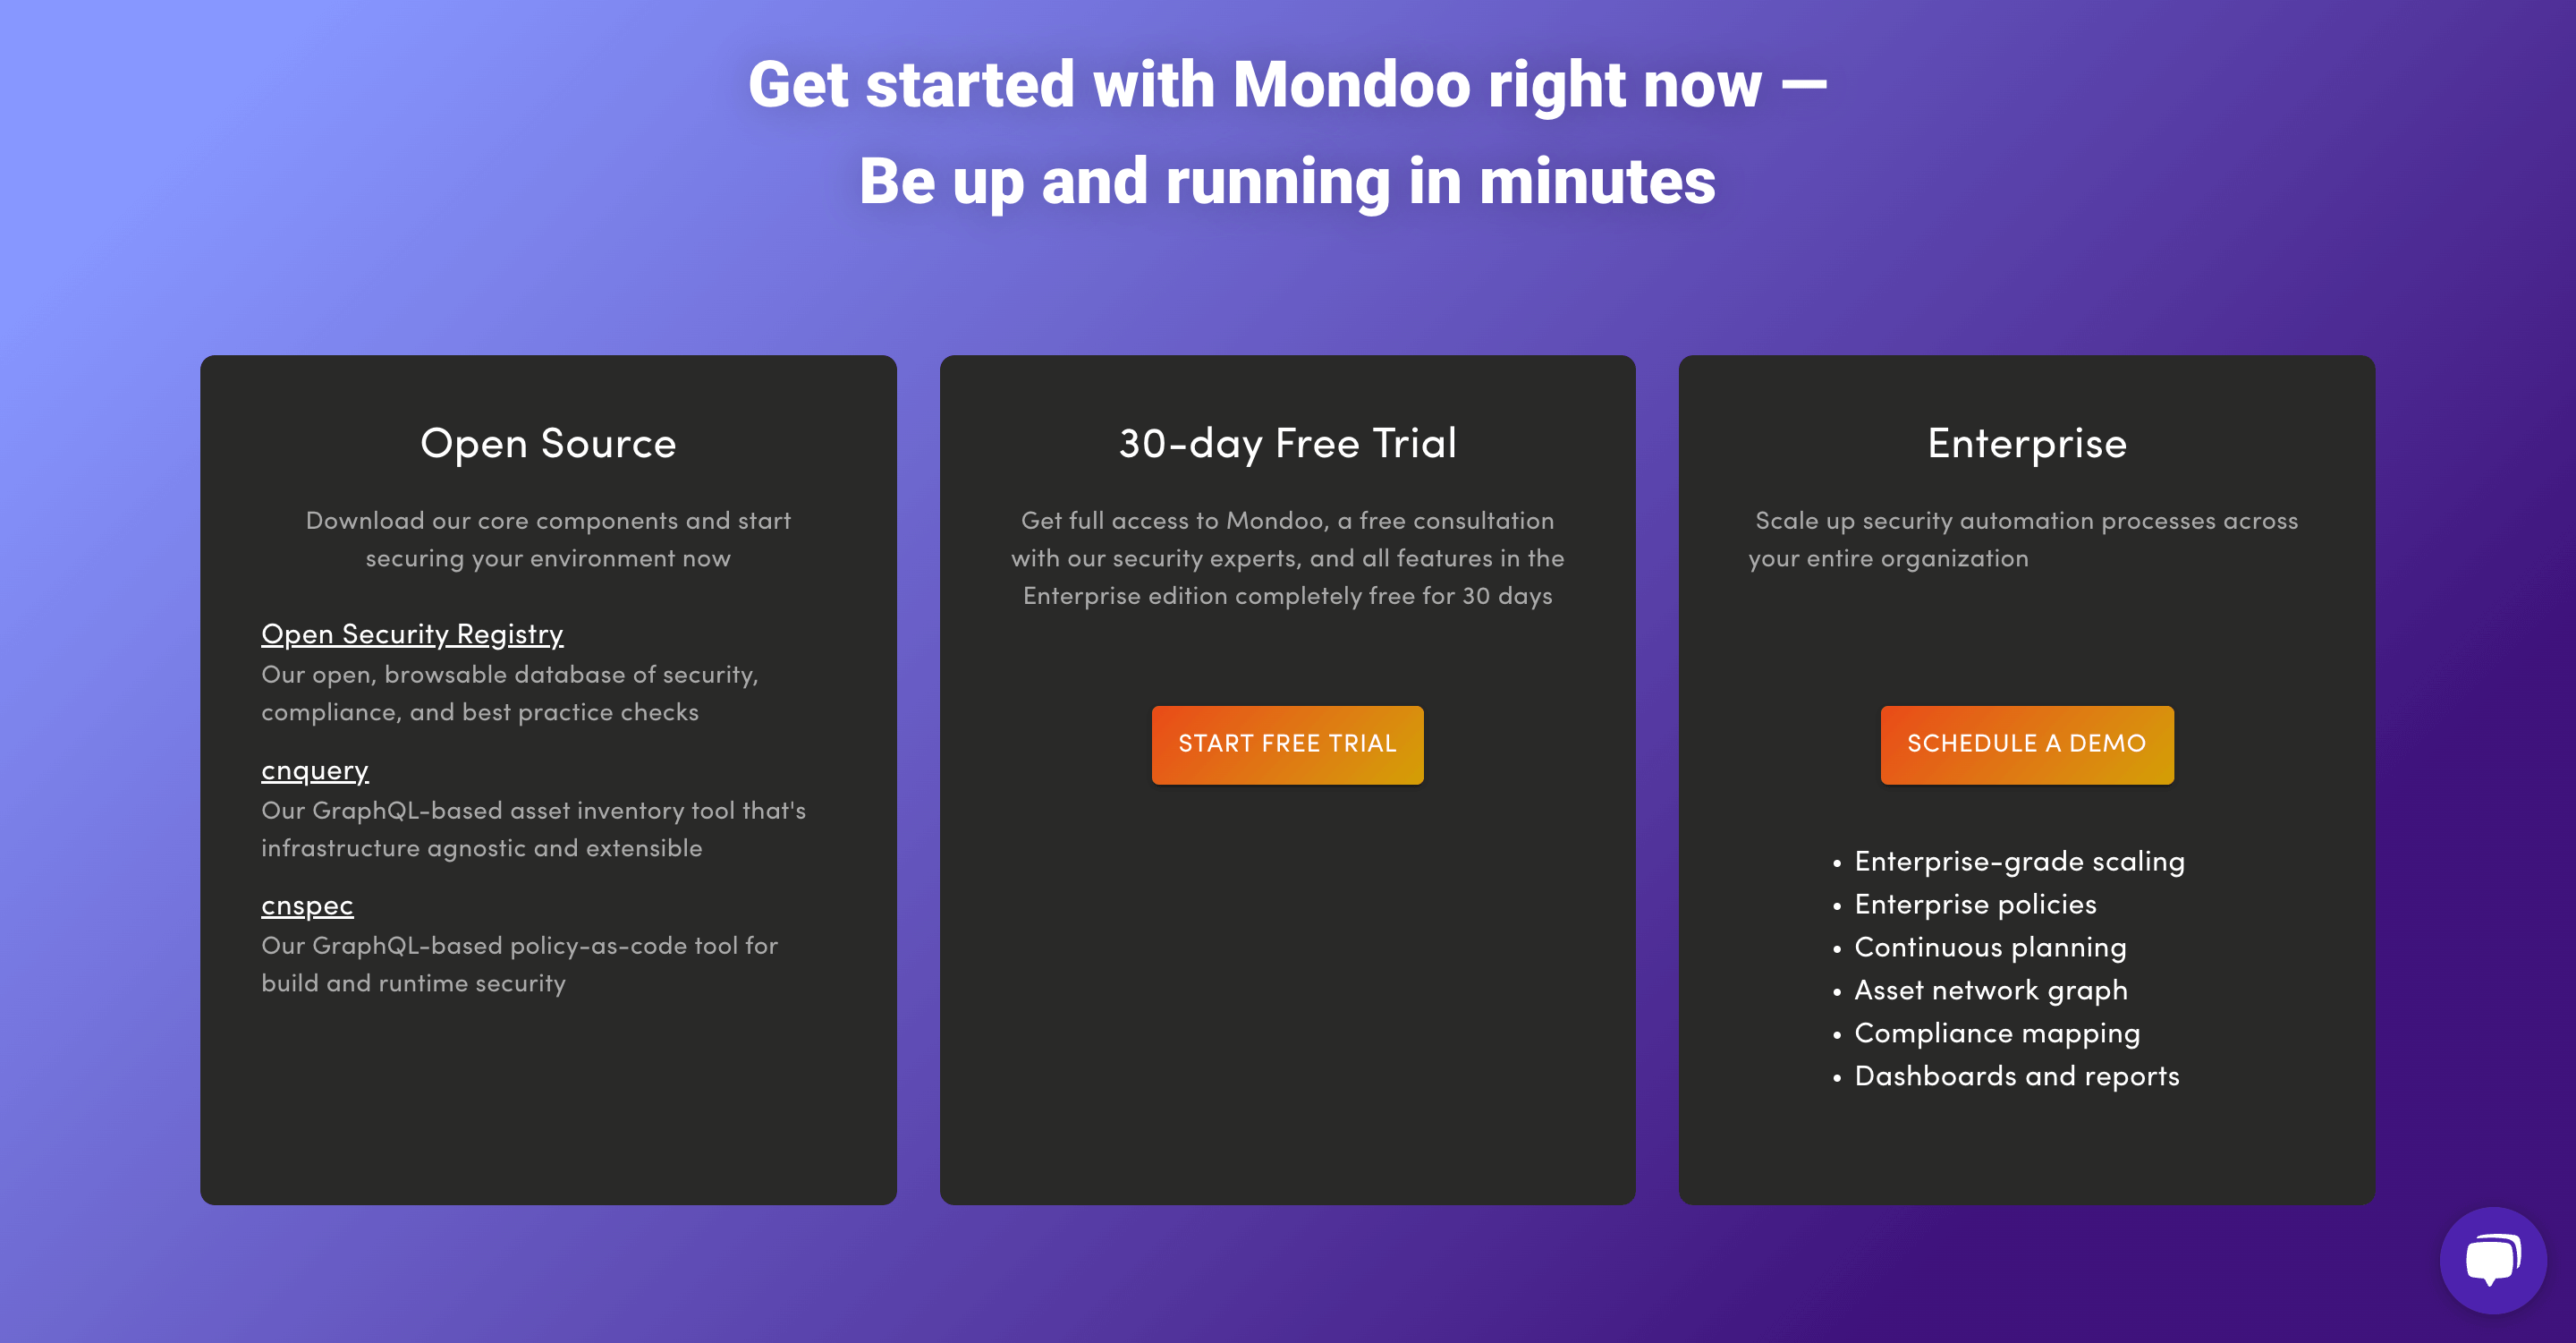 Sign up for Mondoo Platform